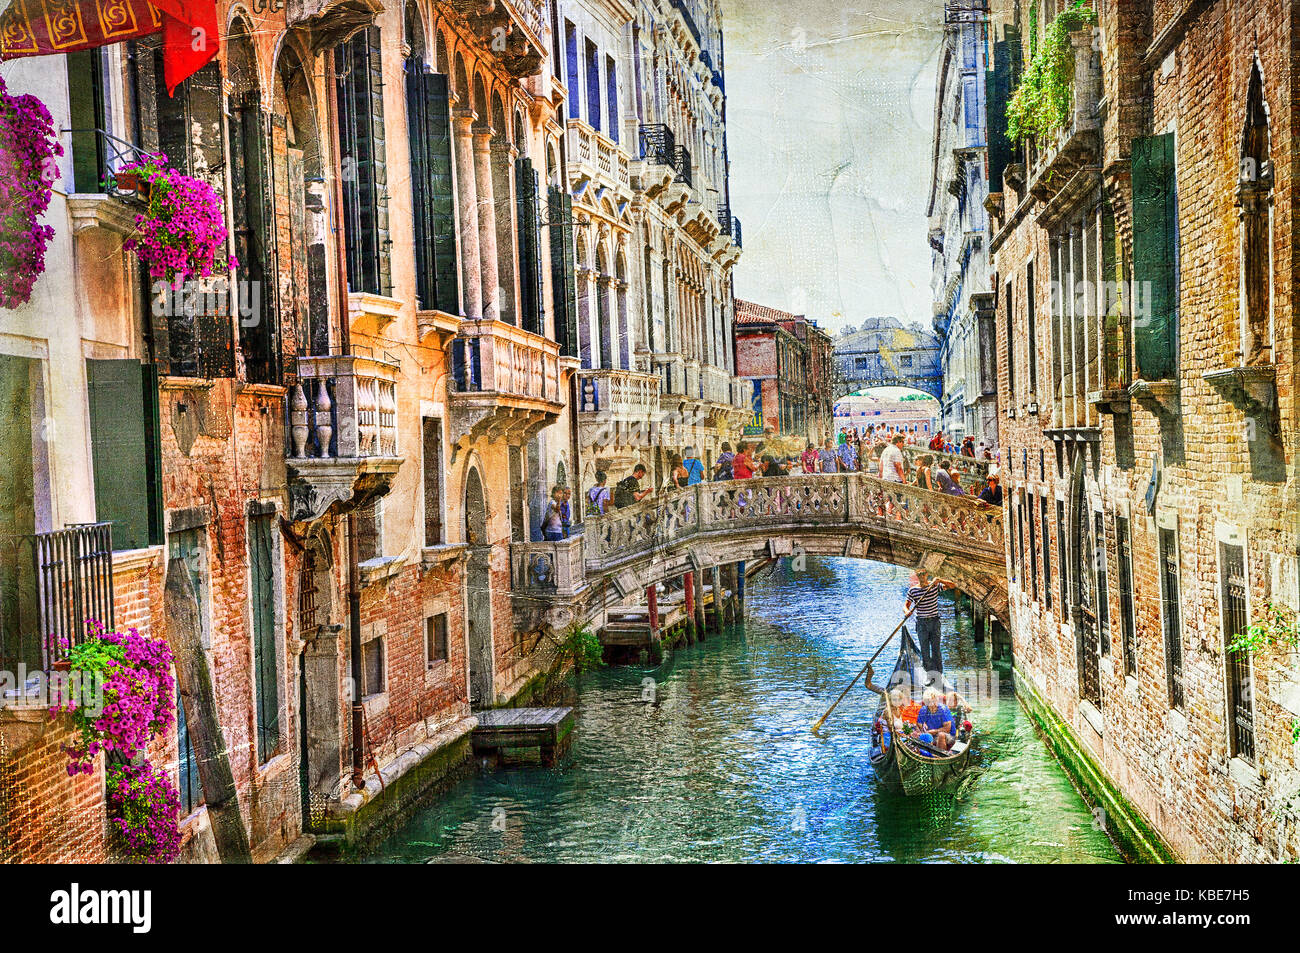 La bella Venecia romántica - fotografía artística en el estilo de la pintura Foto de stock